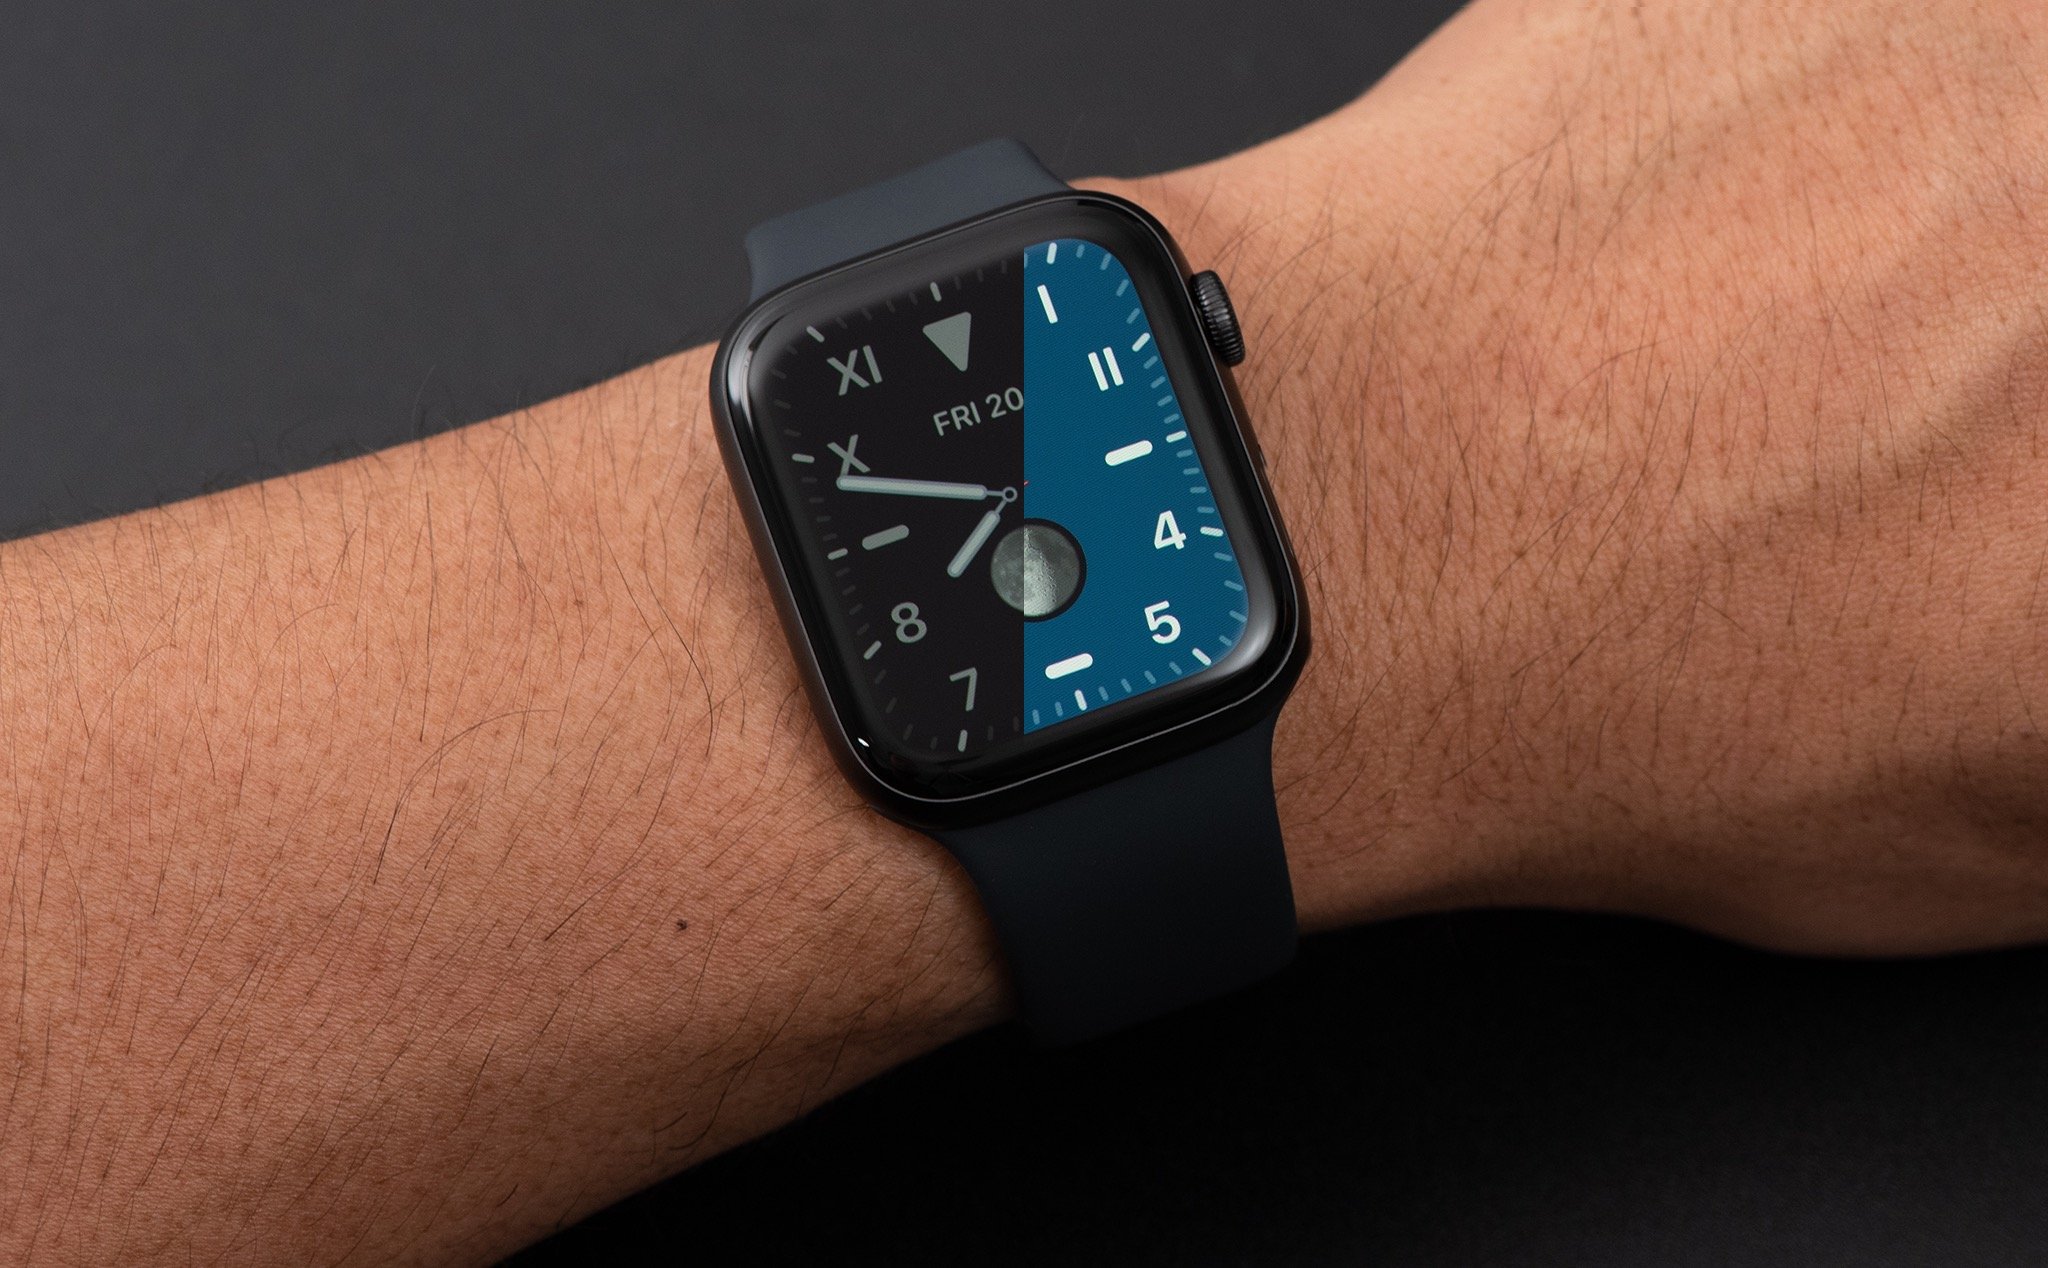 Trên tay Apple Watch Series 5: Mặt đồng hồ luôn sáng